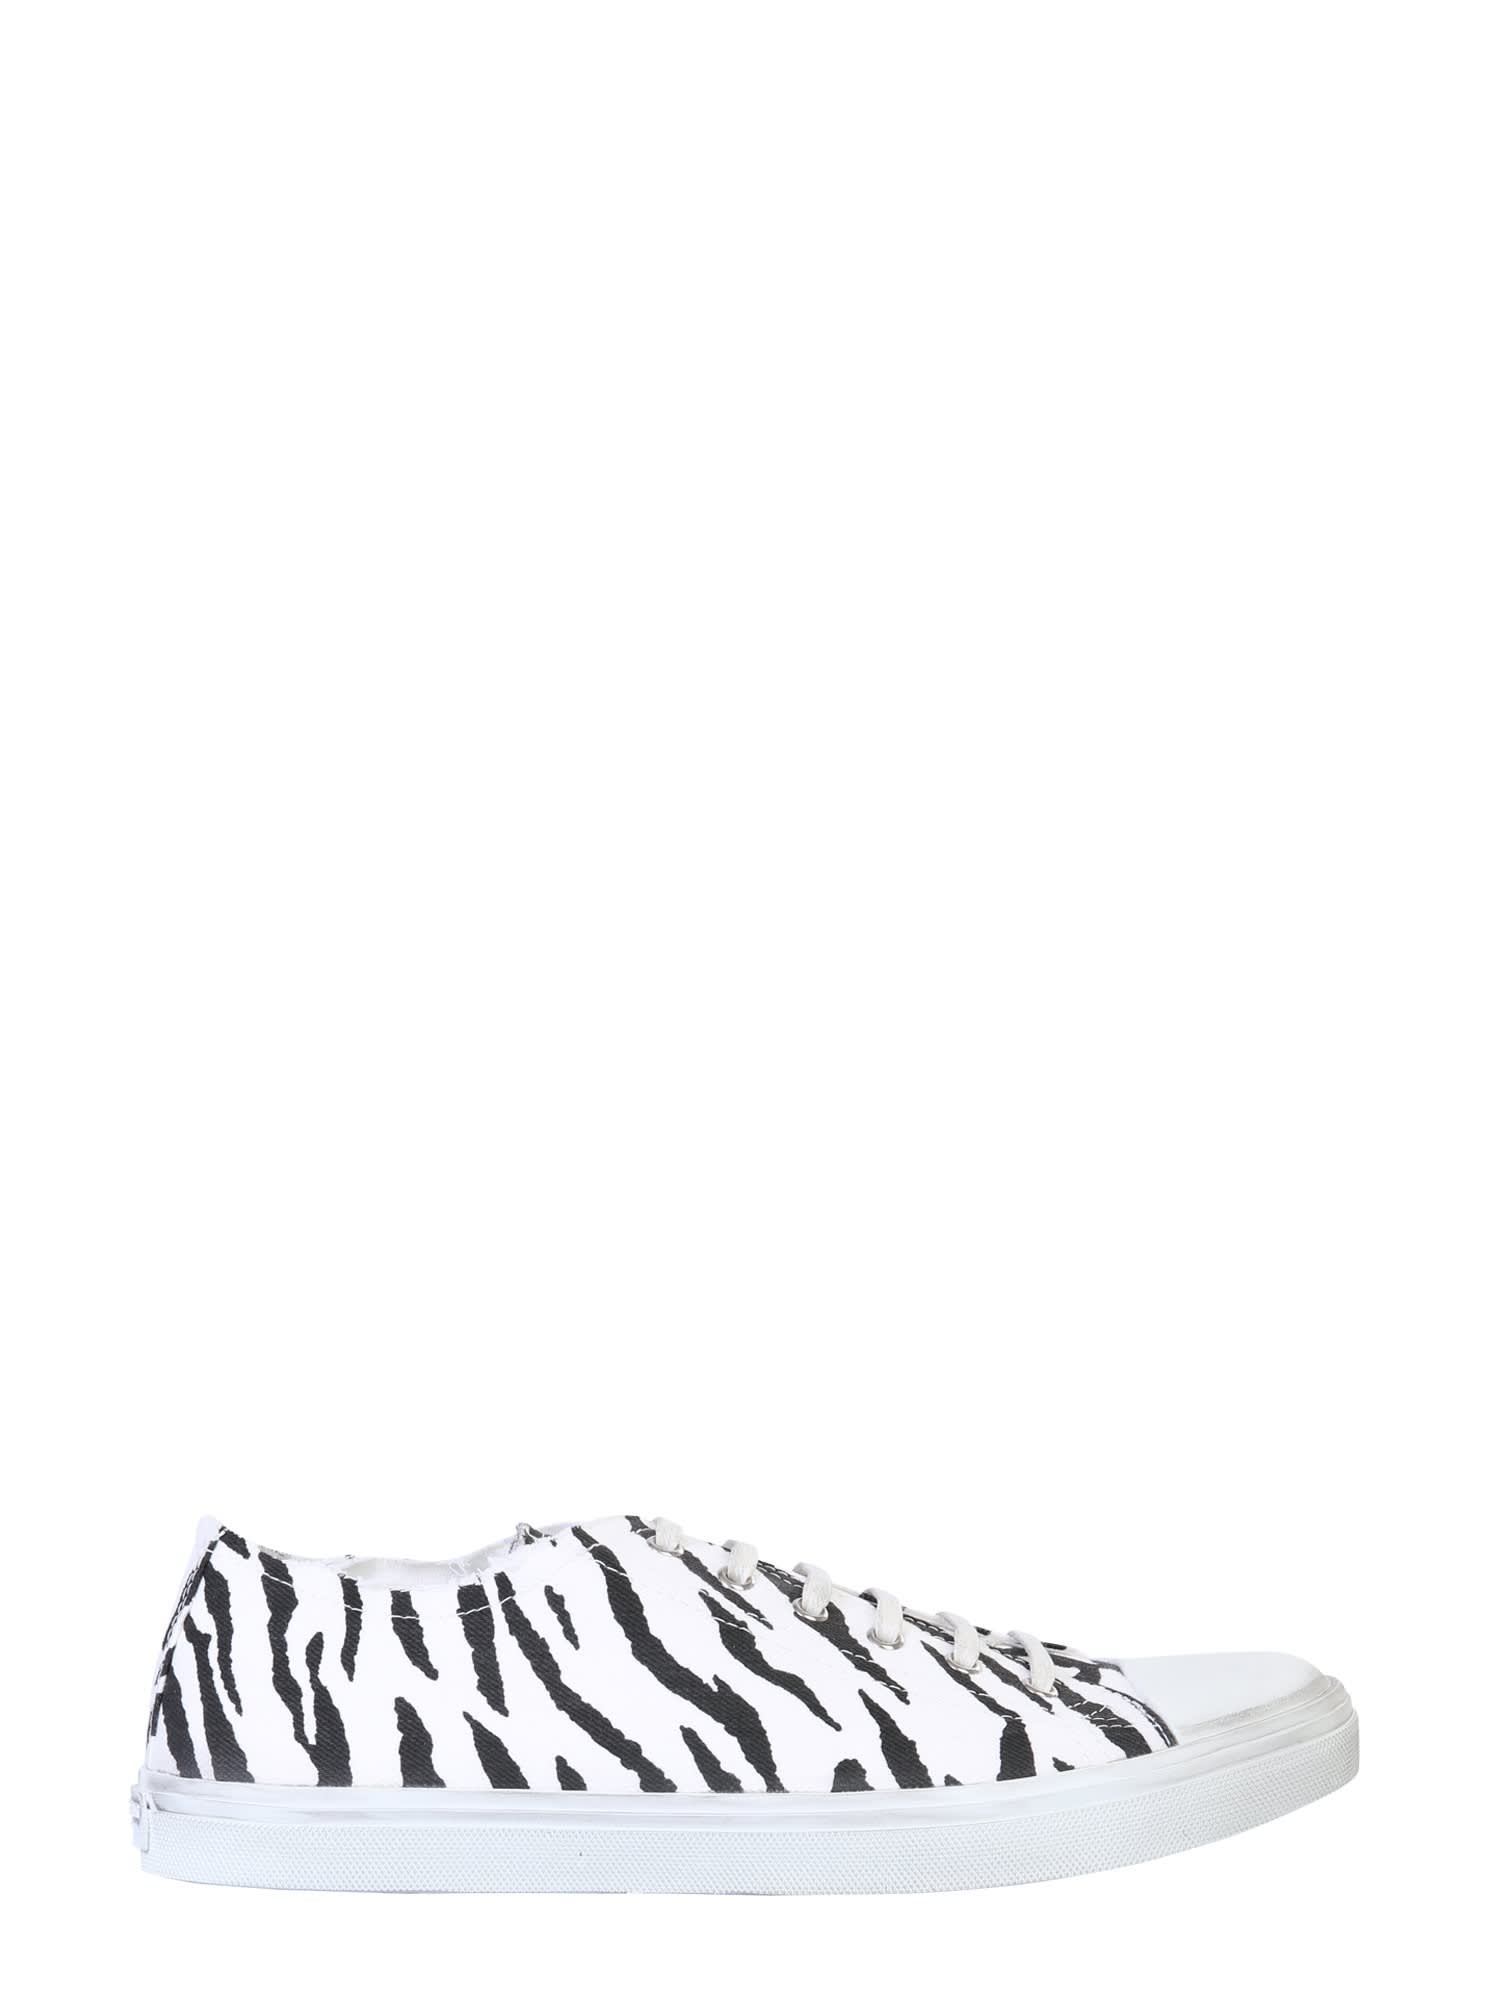 Saint Laurent Zebra Print Low-top Sneakers